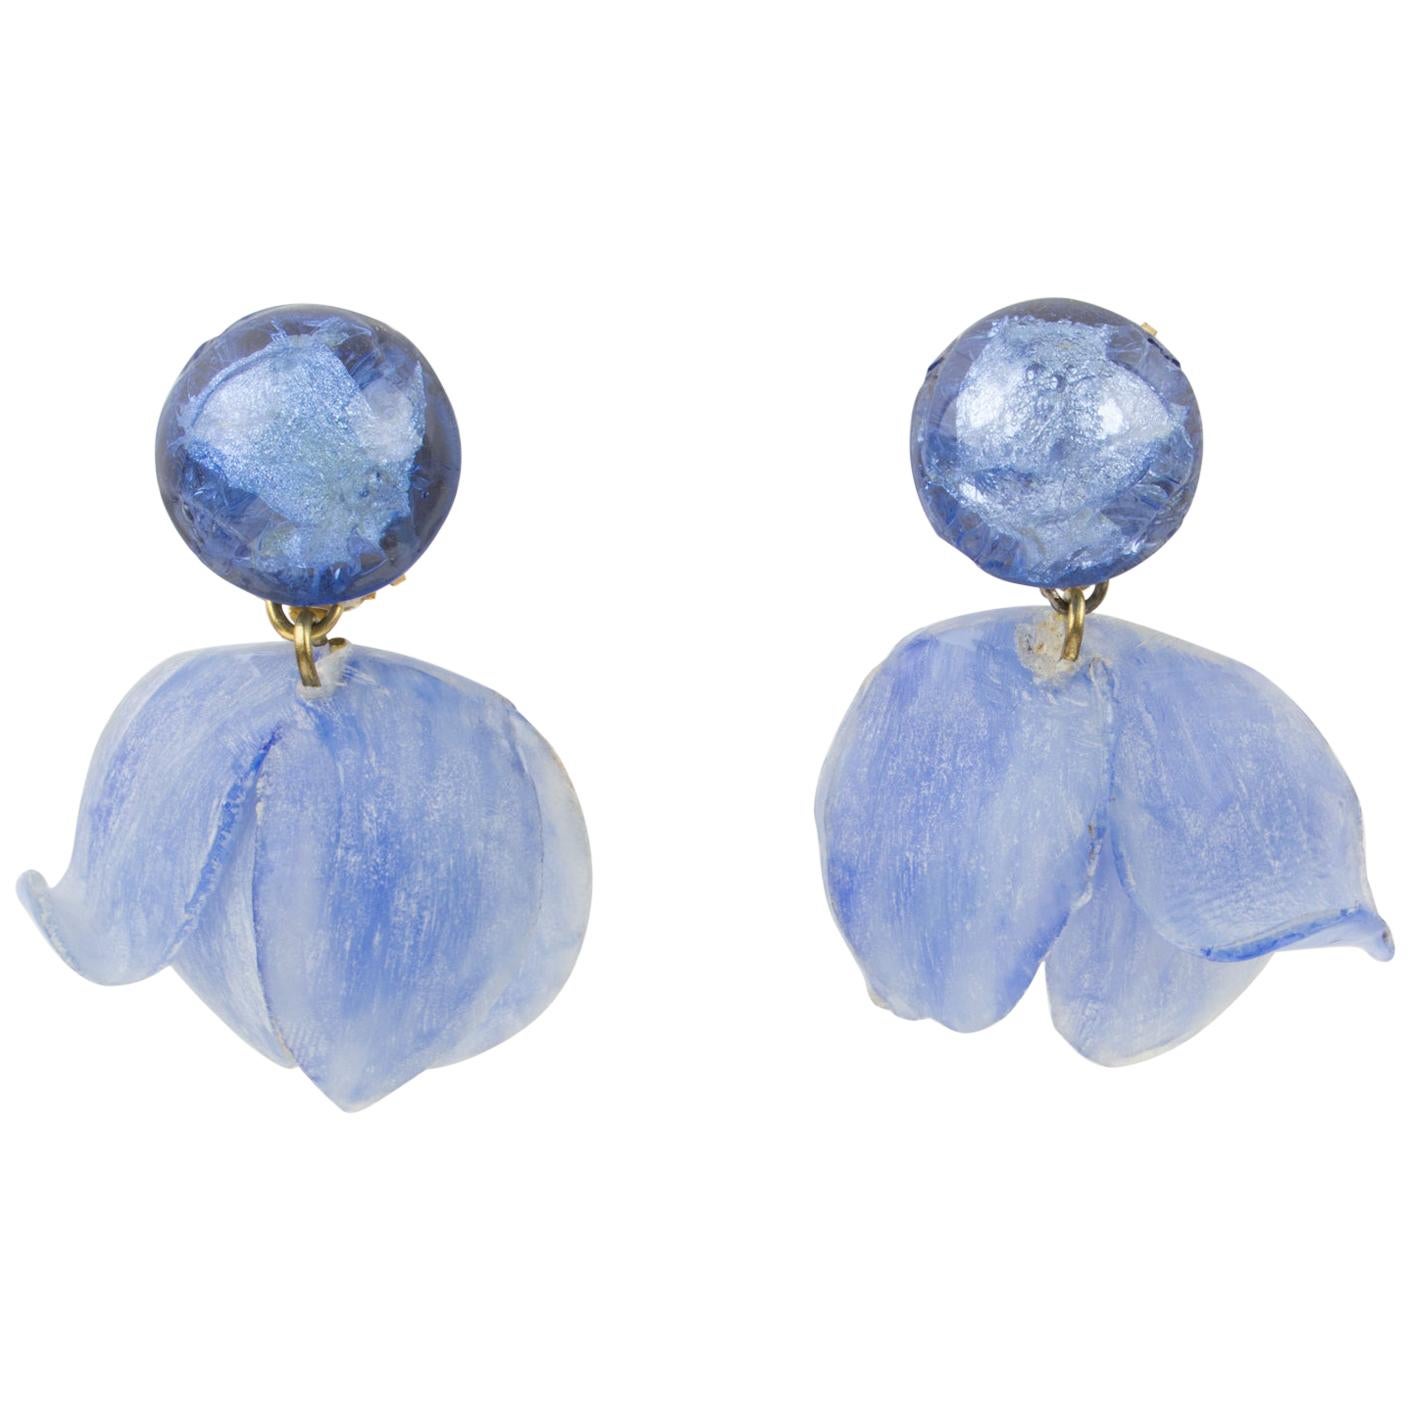 Francoise Montague by Cilea Clip Earrings Lavender Blue Flower